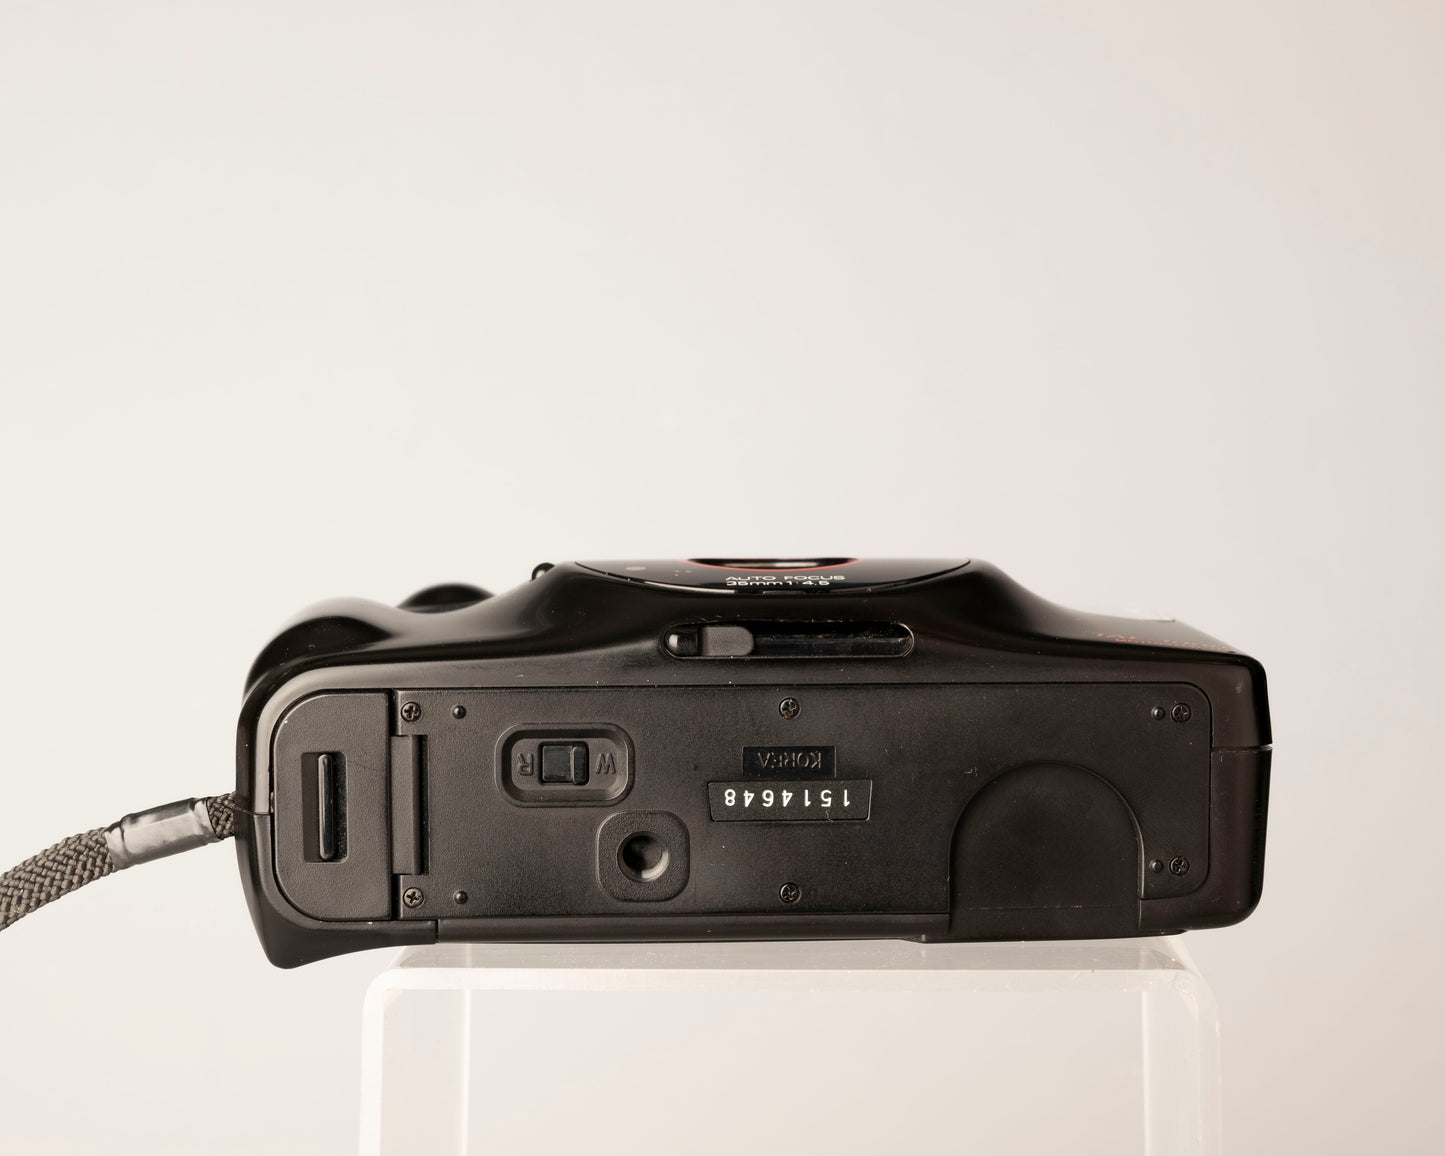 Appareil photo argentique Samsung TAF-1000 35 mm avec boîte d'origine